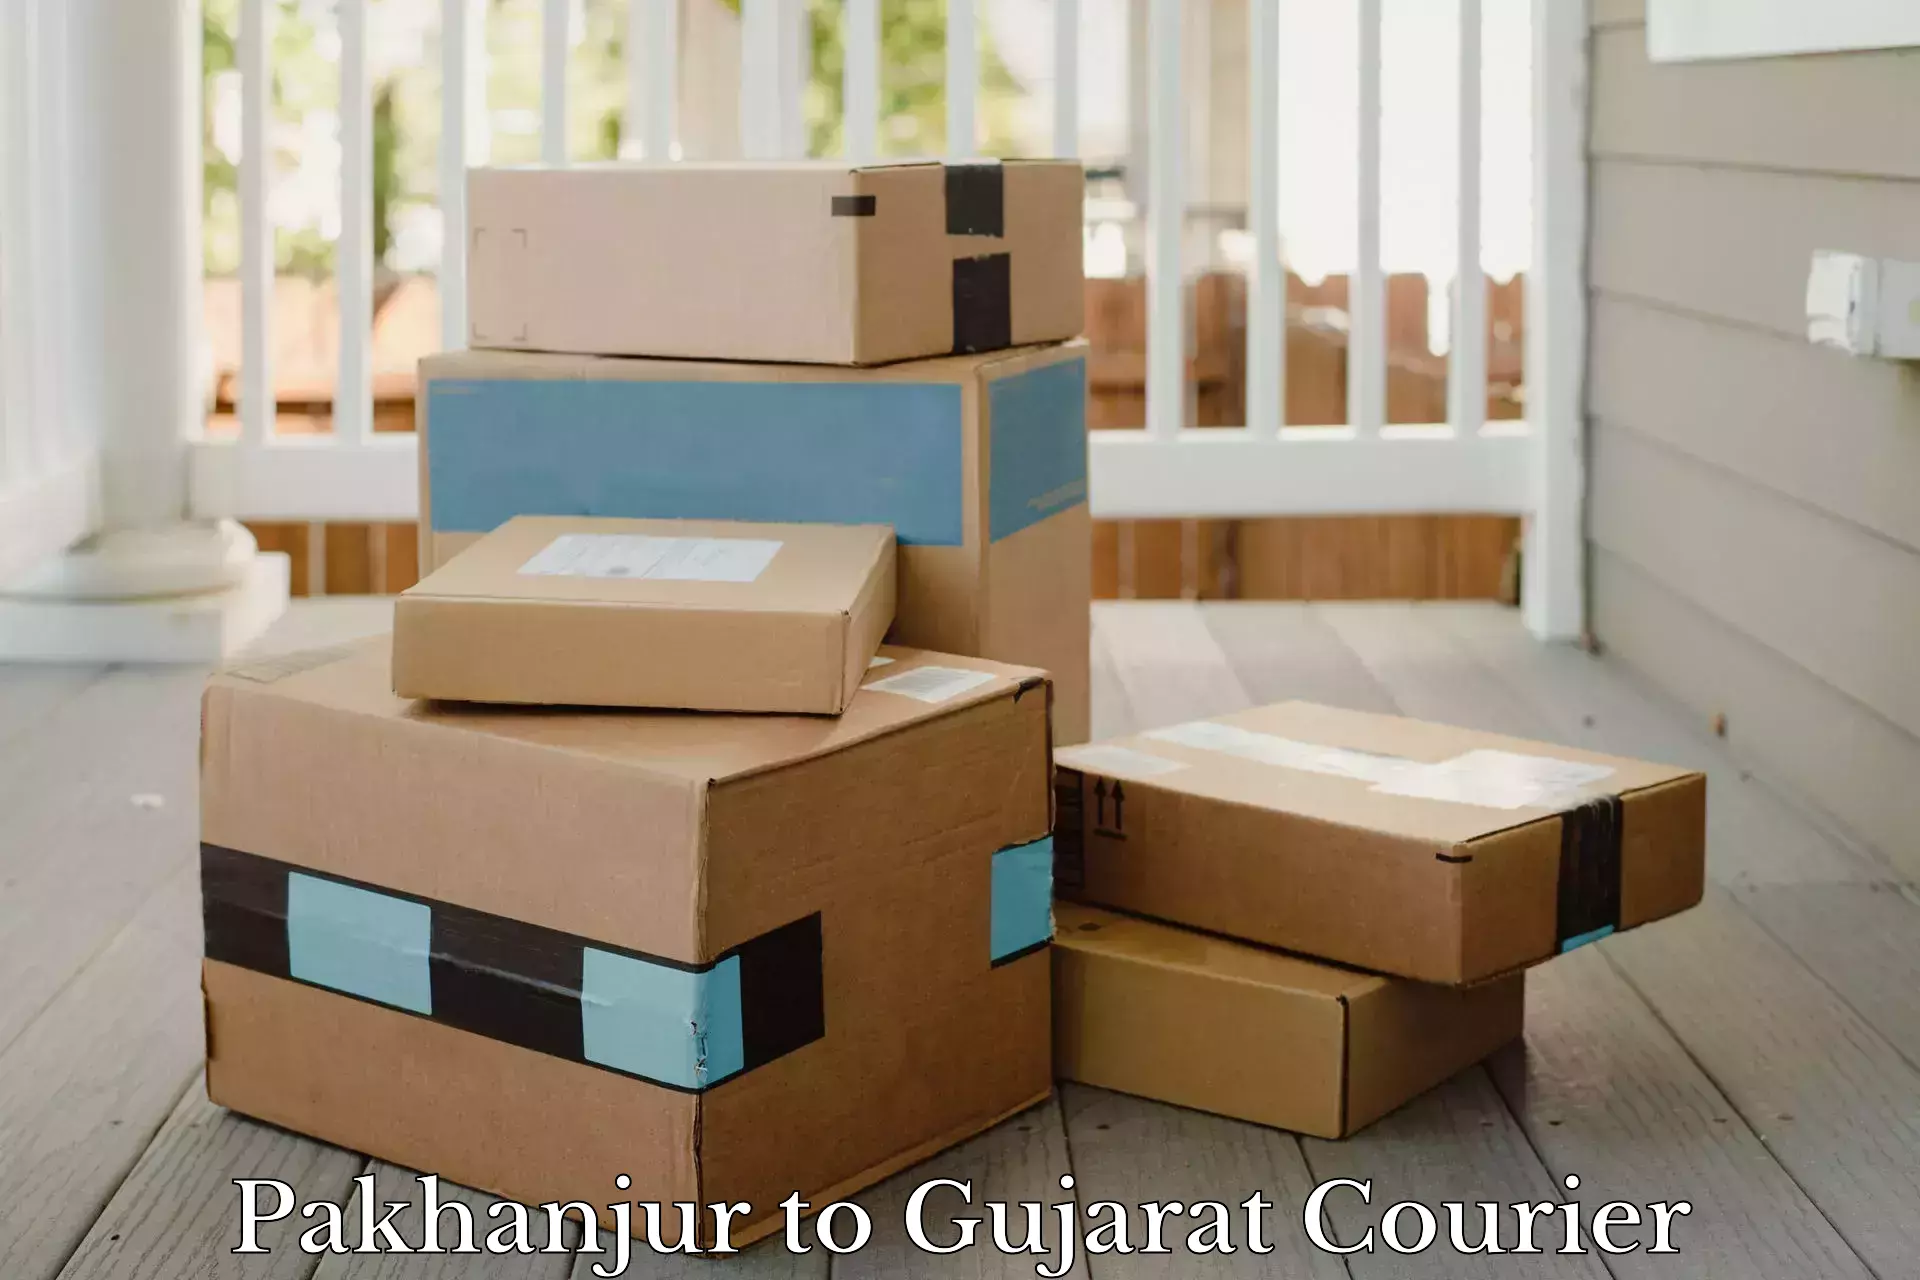 Customer-focused courier Pakhanjur to Gujarat